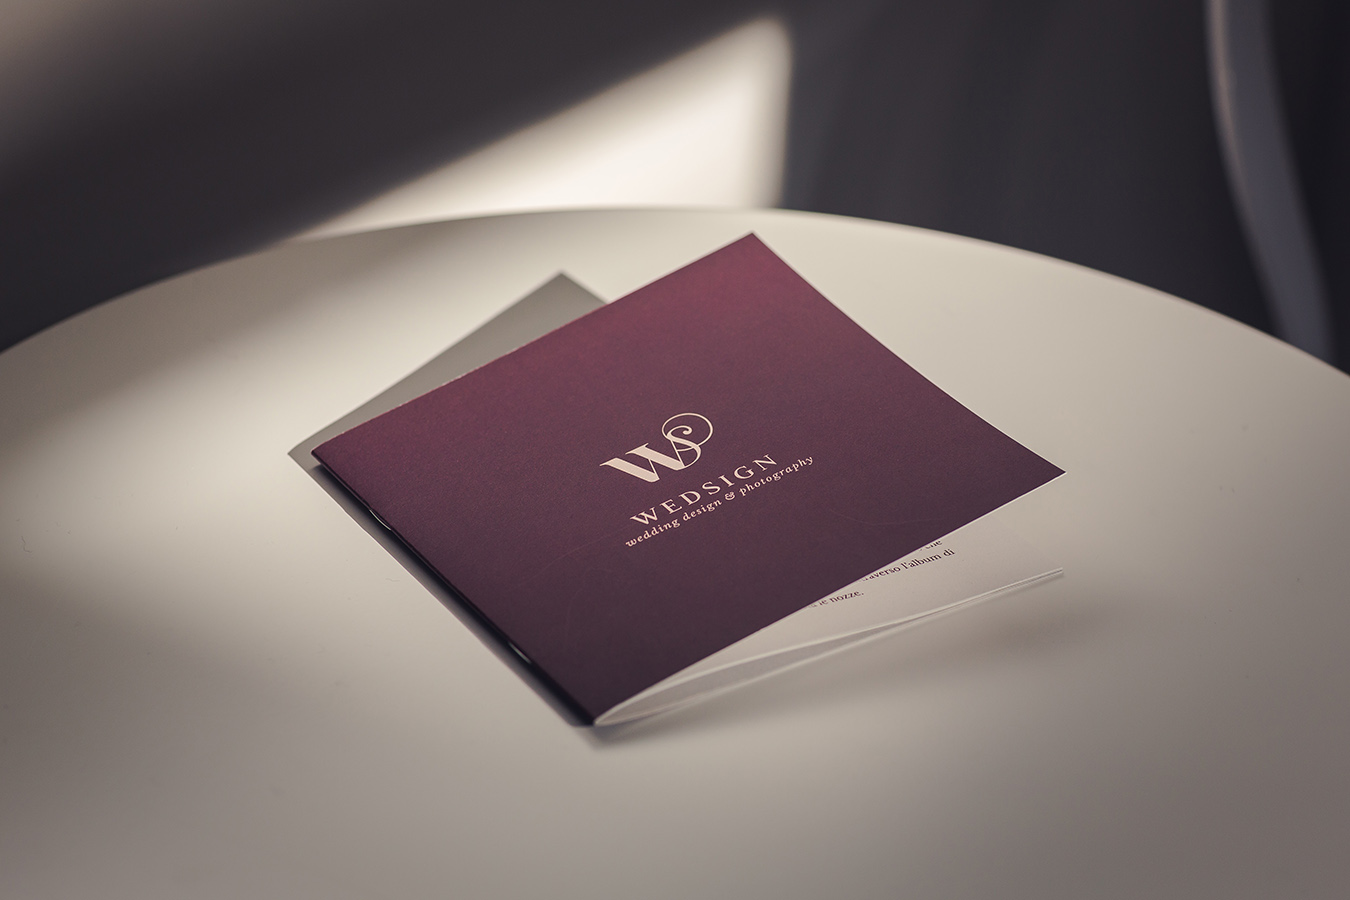 wedsign - wedding design & photography - @wedsignwedding